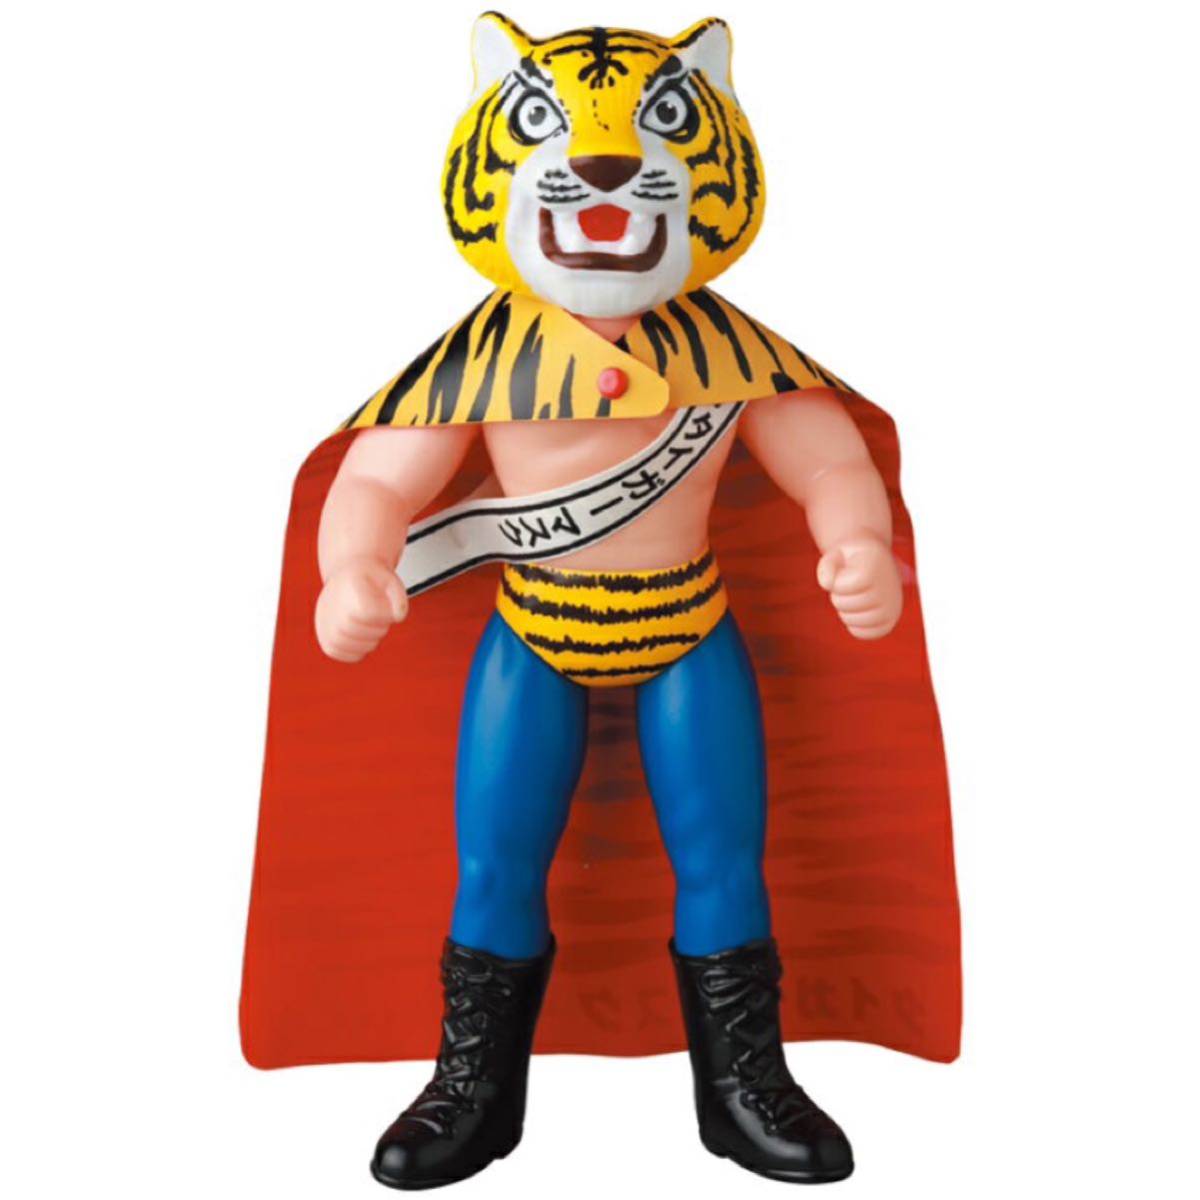 ソフビ タイガーマスク (初期型きいろ1期) 虎だ！虎だ！お前は虎になるのだ！ メディコムトイ 辻なおき タイガーマスク ソフビ 梶原一騎